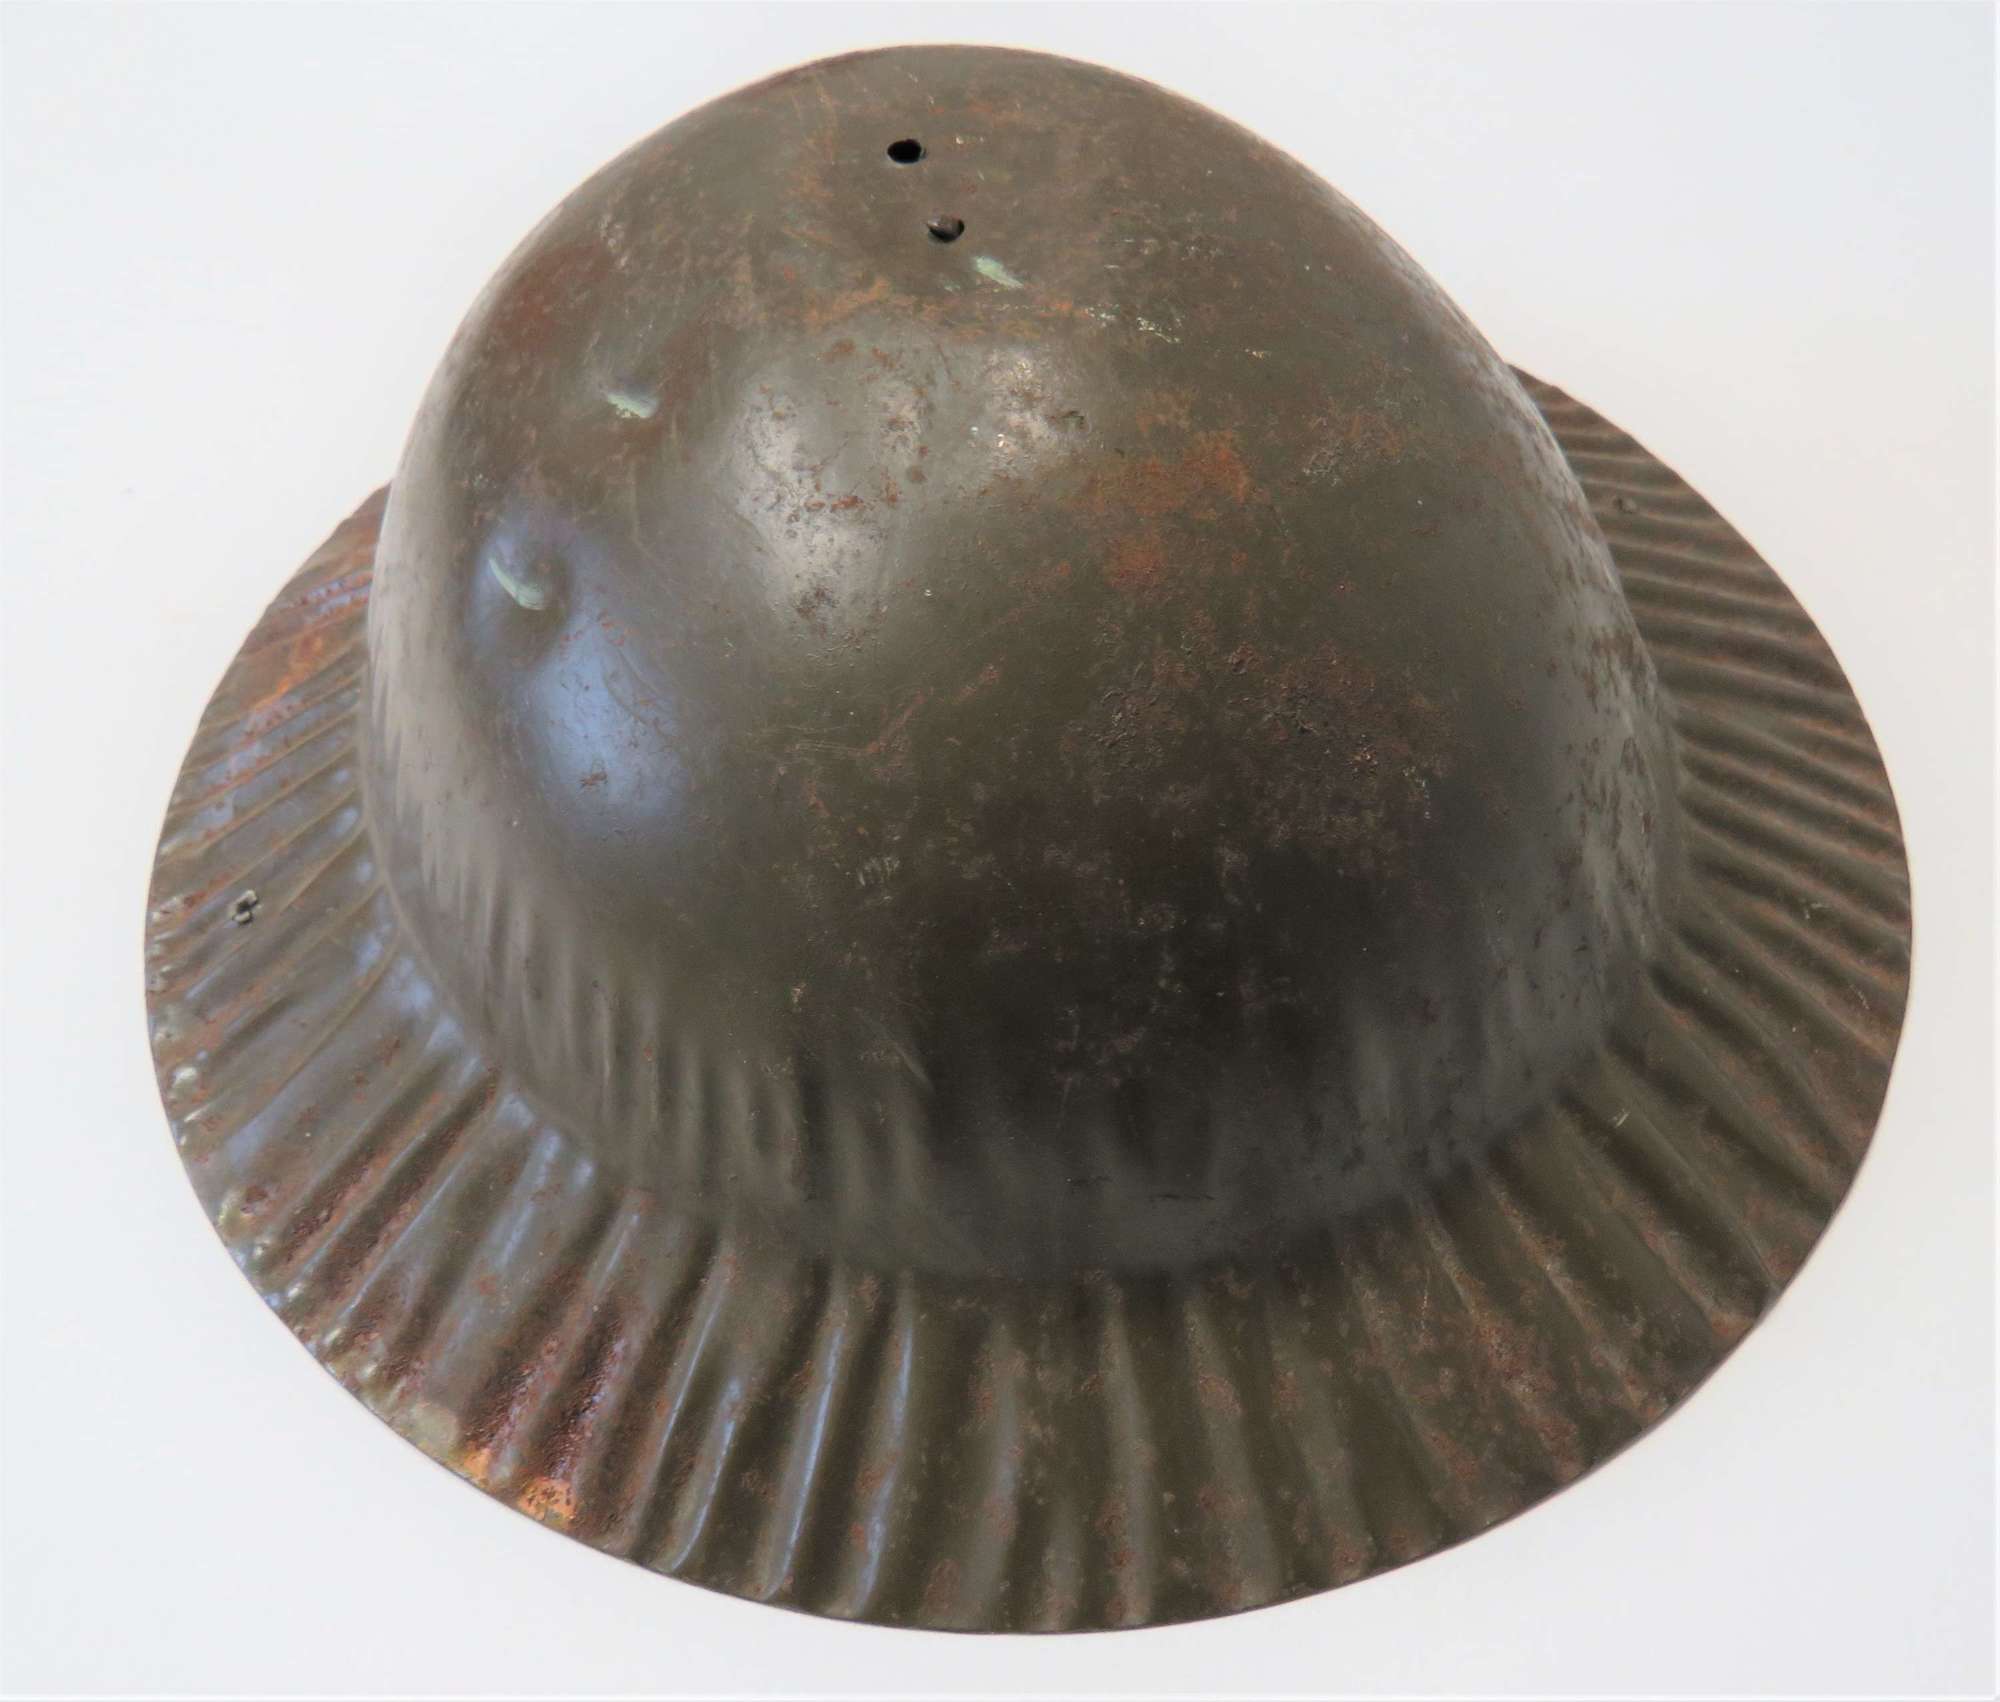 WW2 Home Front Children's Steel Toy Helmet